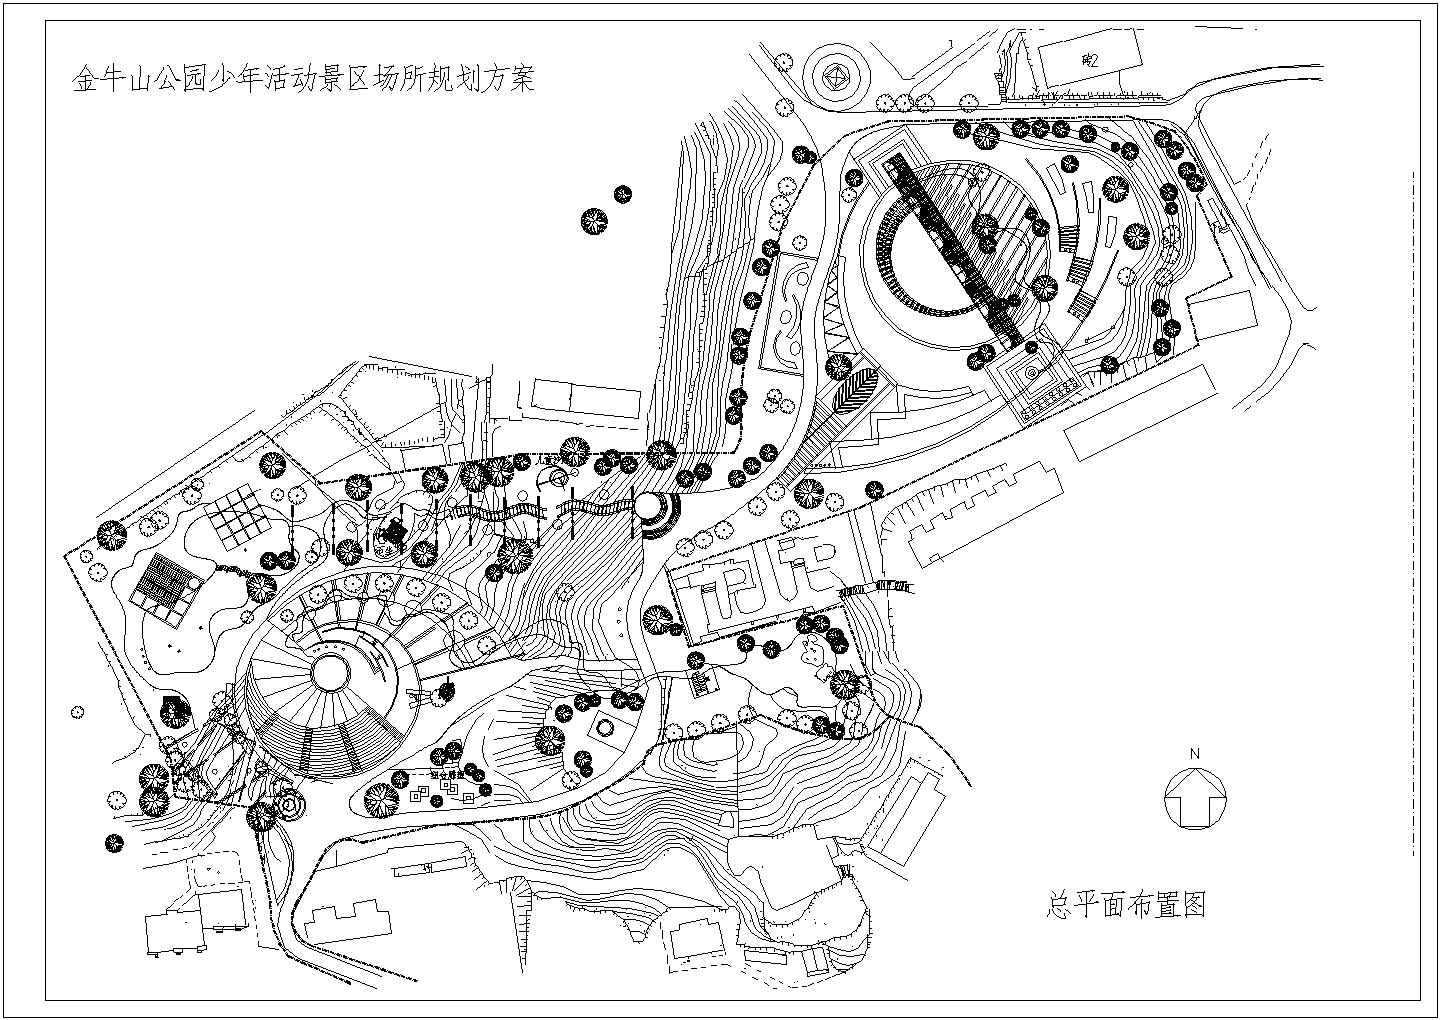 某大型主题公园CAD全套设计构造规划图